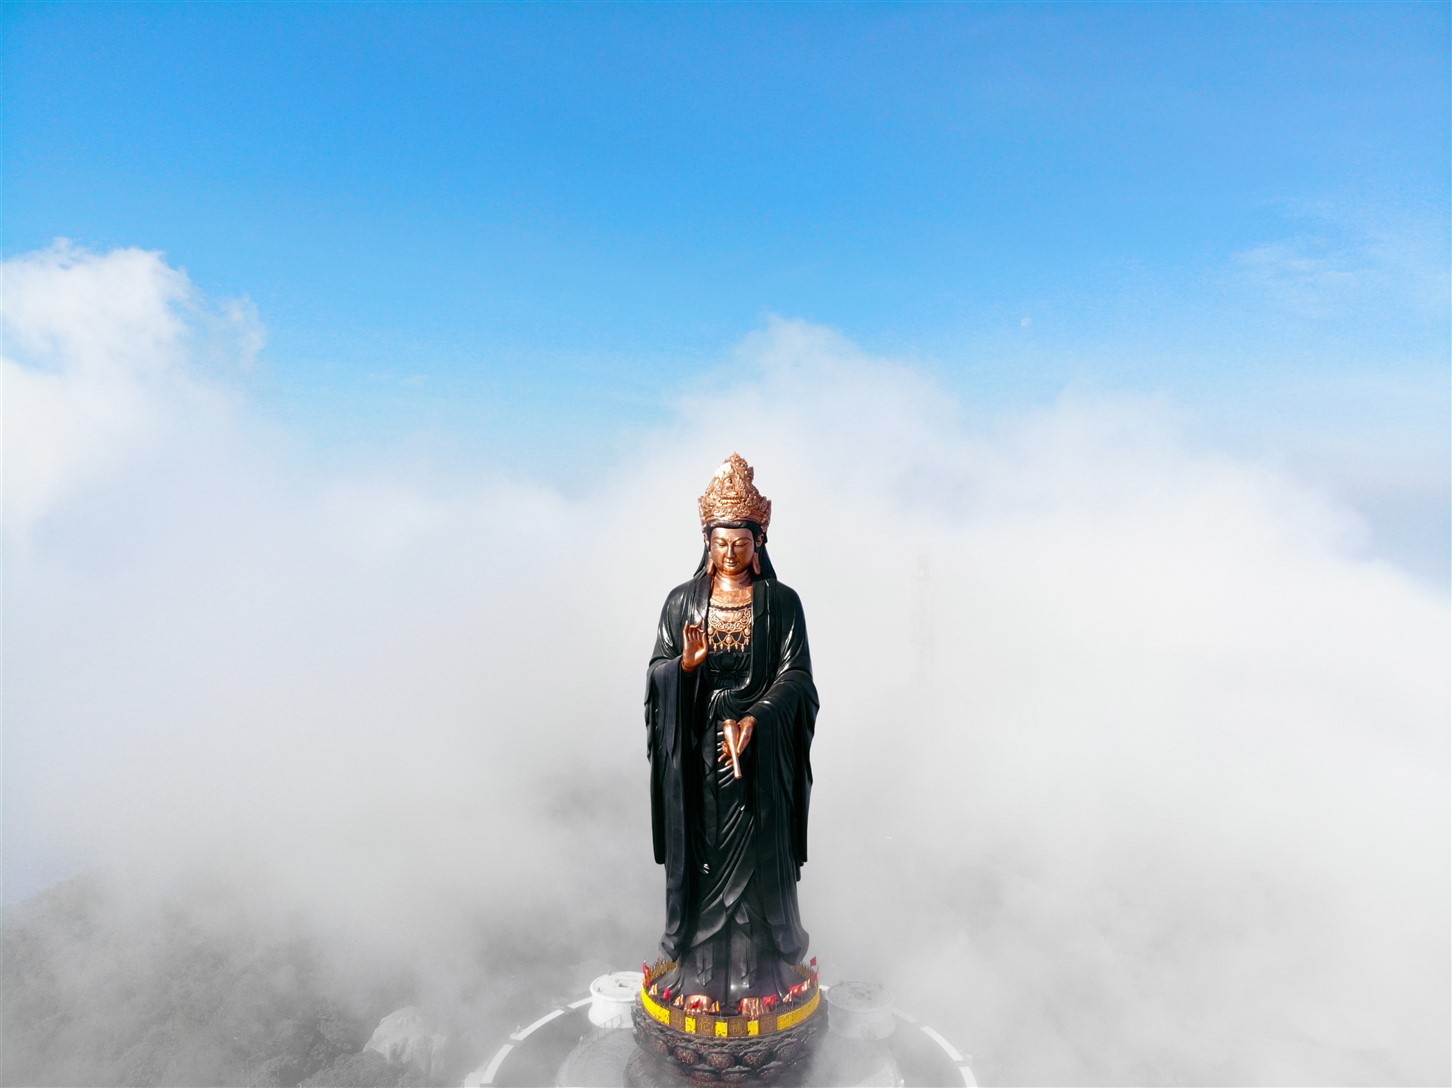 Tượng Phật Bà: Một bức tượng tinh tế của Phật Bà đã được chế tác với sự đeo đuổi về sự thanh tao và hàng ngàn năm của sự phiêu lưu. Tình yêu và sự kính trọng sẽ được khơi gợi trong trái tim của bạn khi bạn trải nghiệm nghệ thuật tuyệt đẹp này.